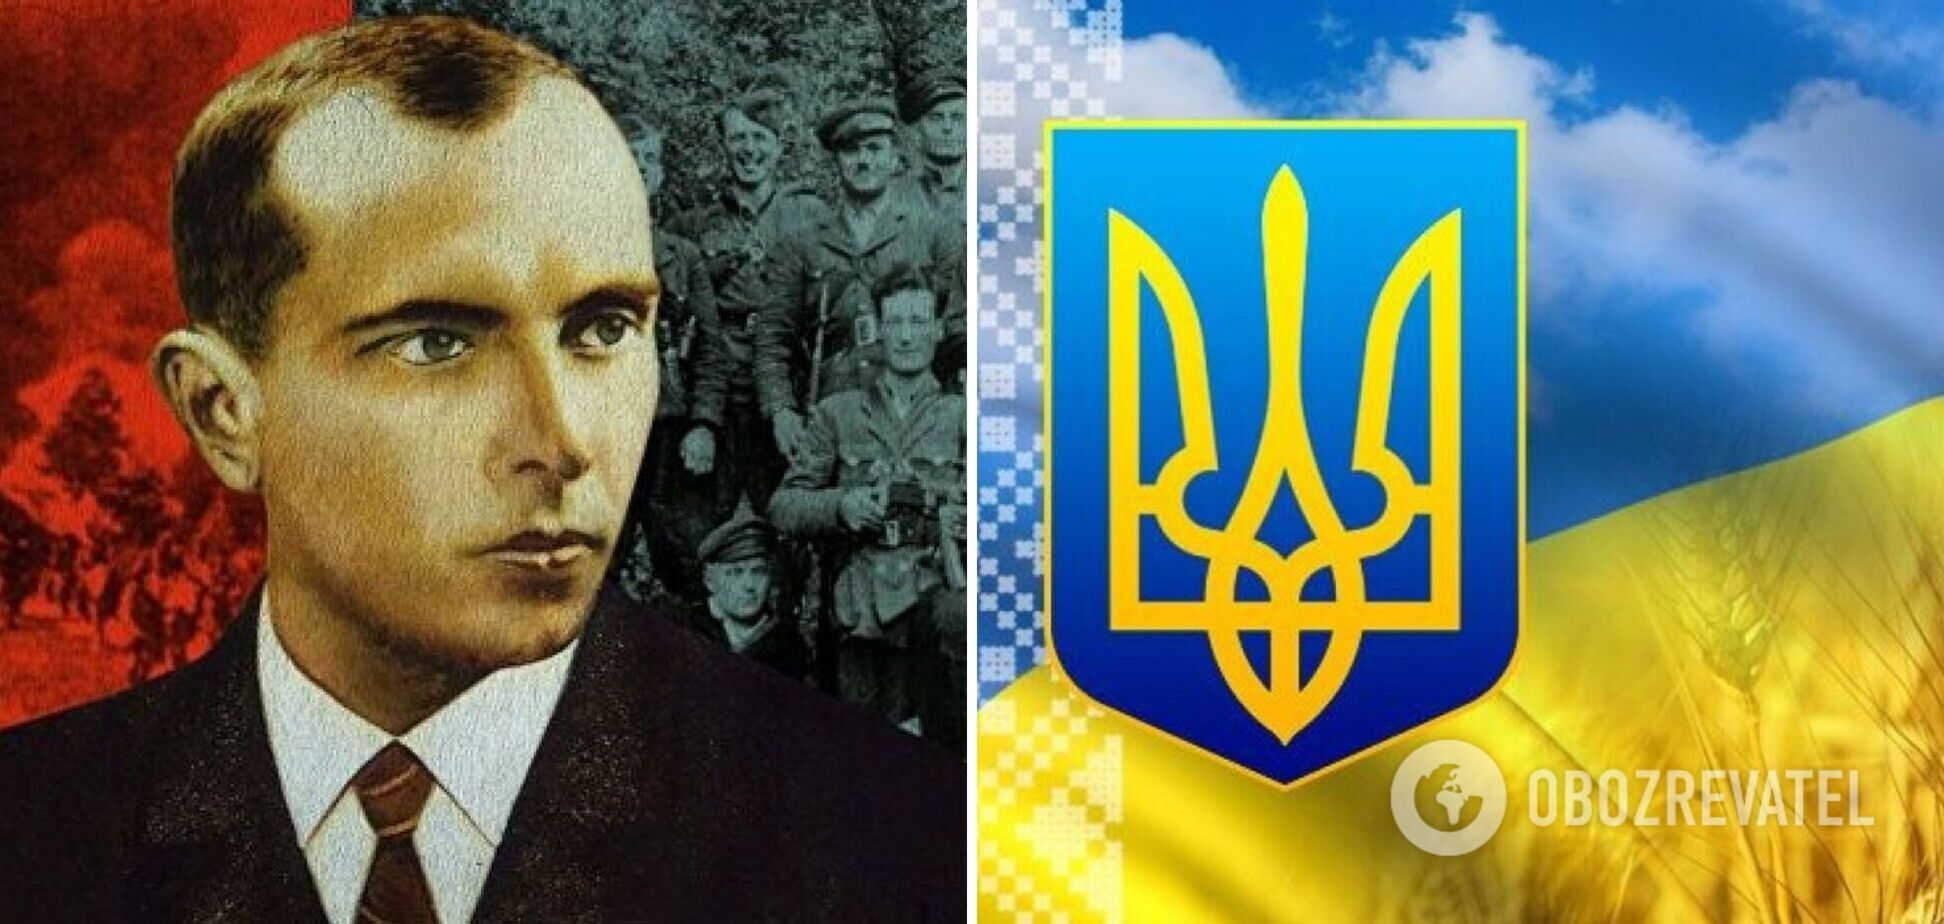 Сьогодні один каже: Слава Україні! А мільйони відгукуються: Героям слава!